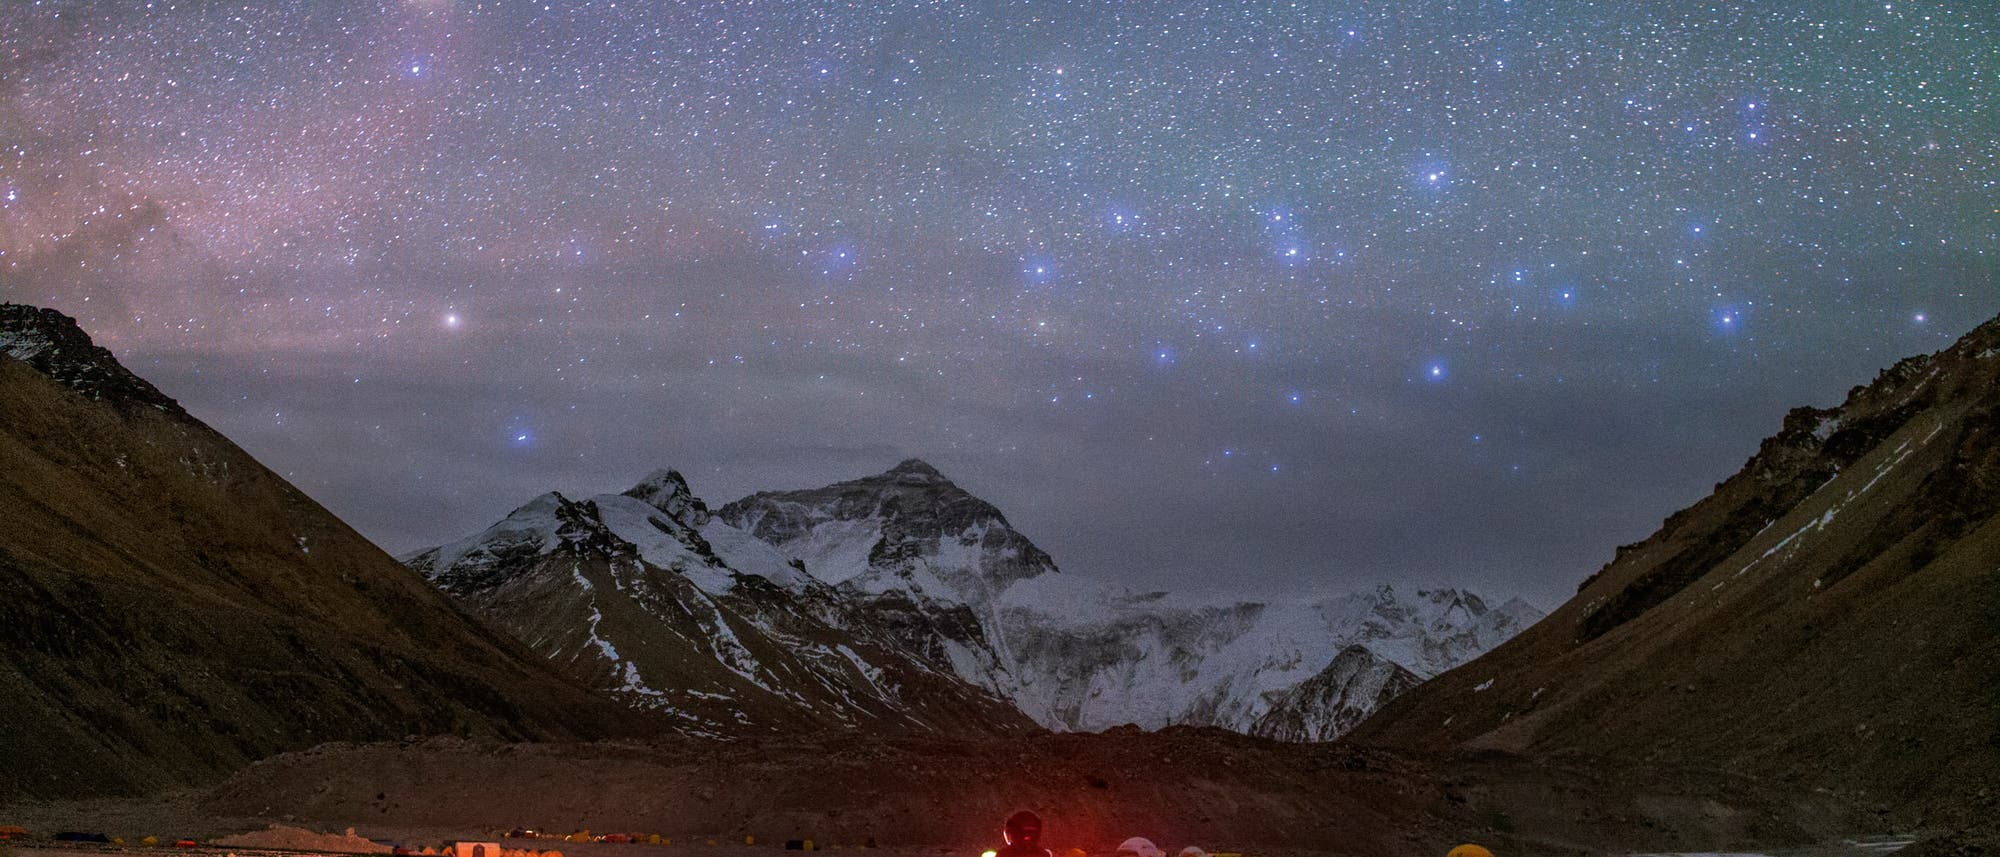 Der rötliche Antares im Sternbild Skorpion und die bläulichen Sterne des Centaurus leuchten über den hohen Berggipfeln des Himalaya. Der Motorrad-Tourist erreicht gerade das nördliche Basislager des Mount Everest in Tibet, das auf einer Höhe von 5170 Metern liegt.